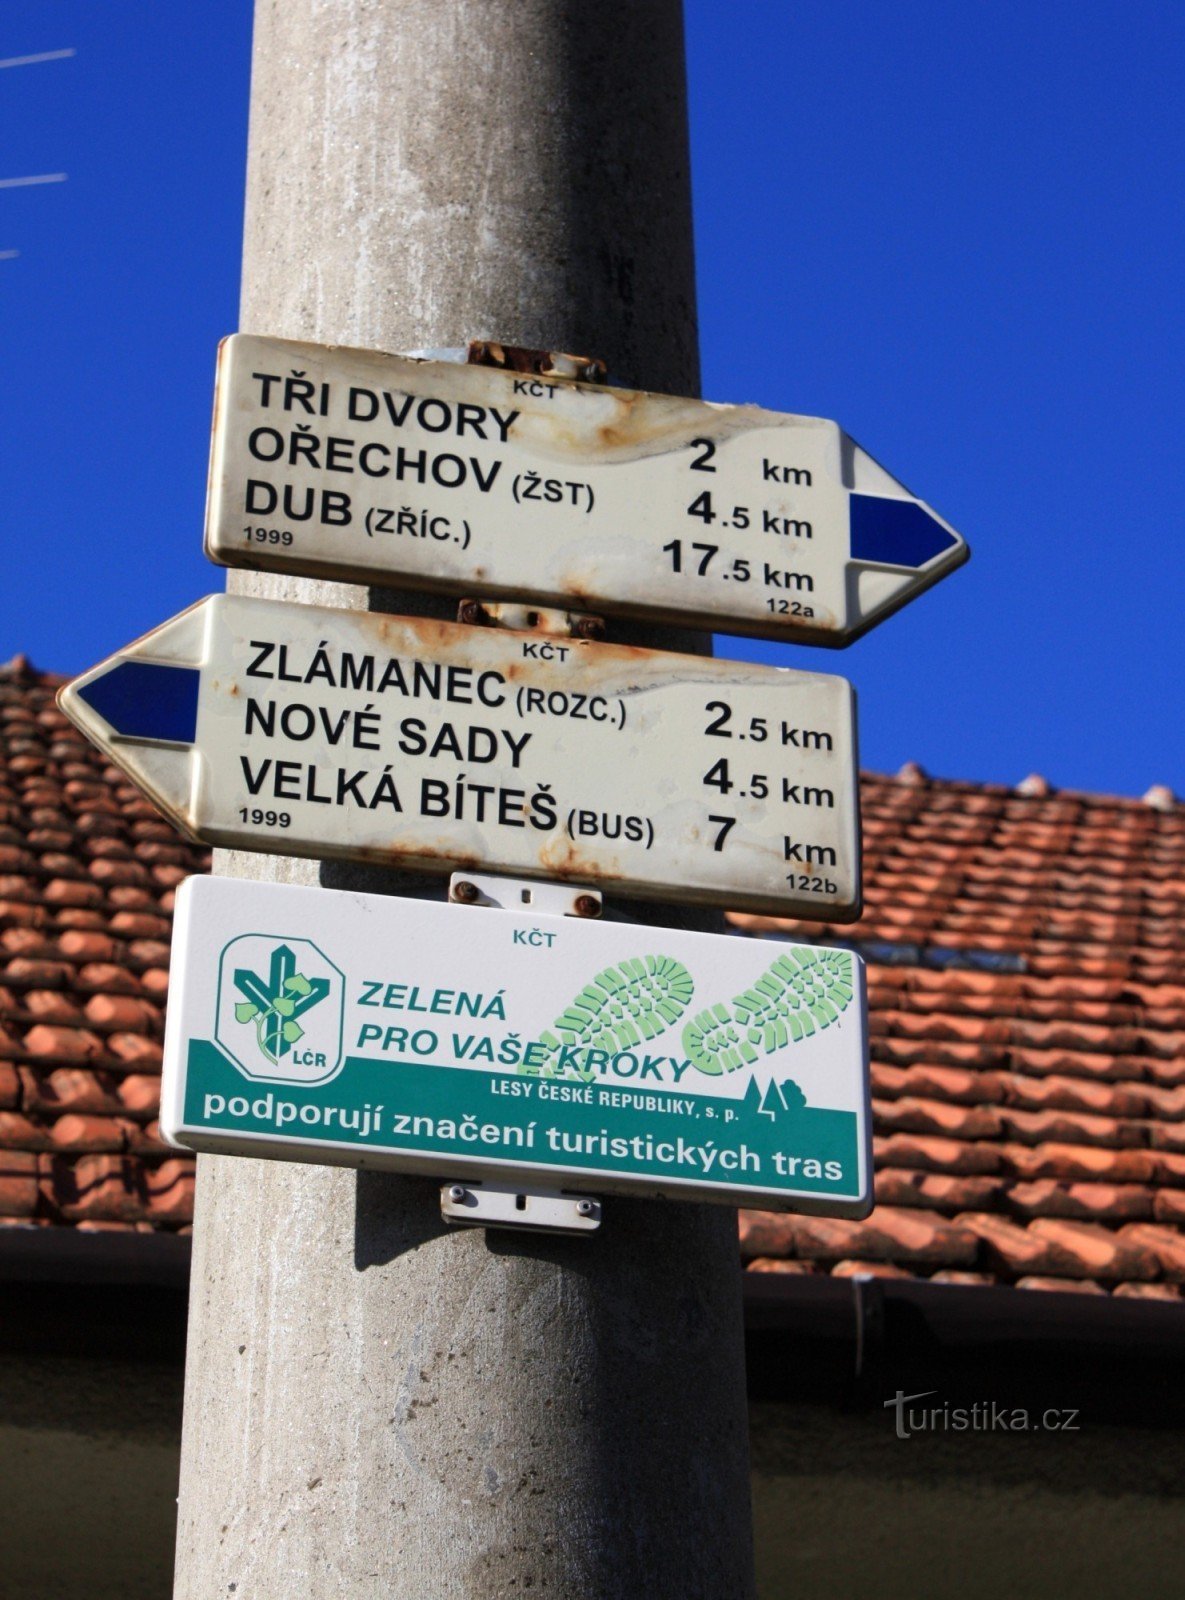 Osová Bítýška - tourist guide